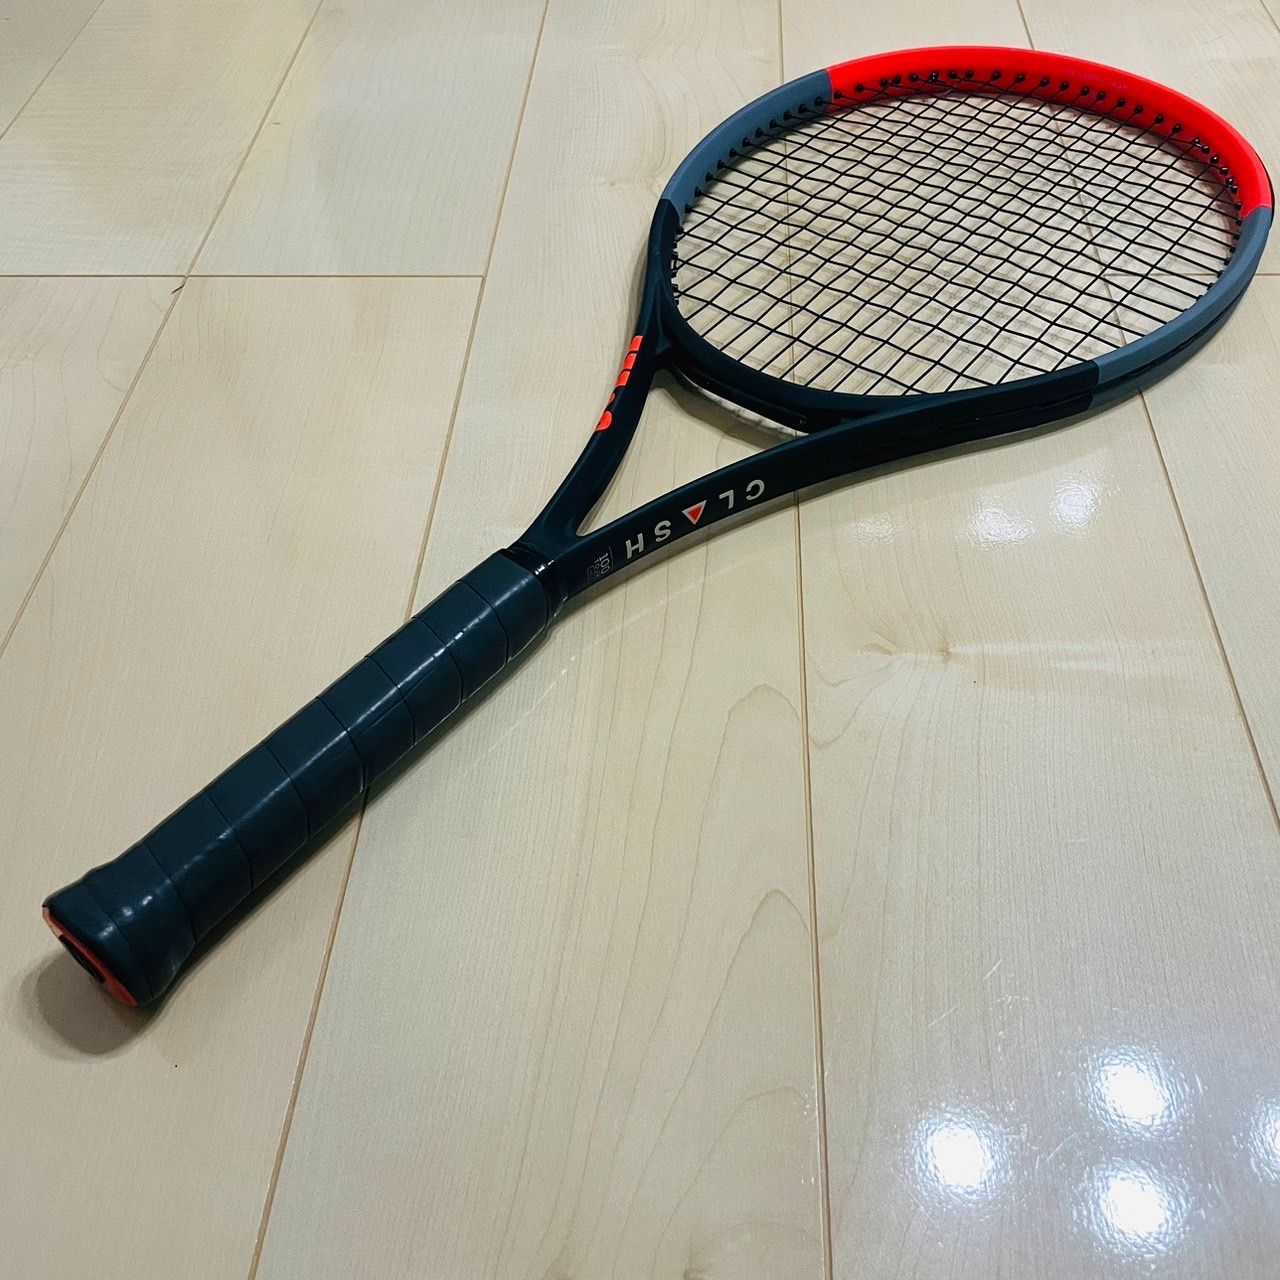 一部予約販売】 【即日発送】テニスラケット ウィルソンCLASH 100 v1.0 